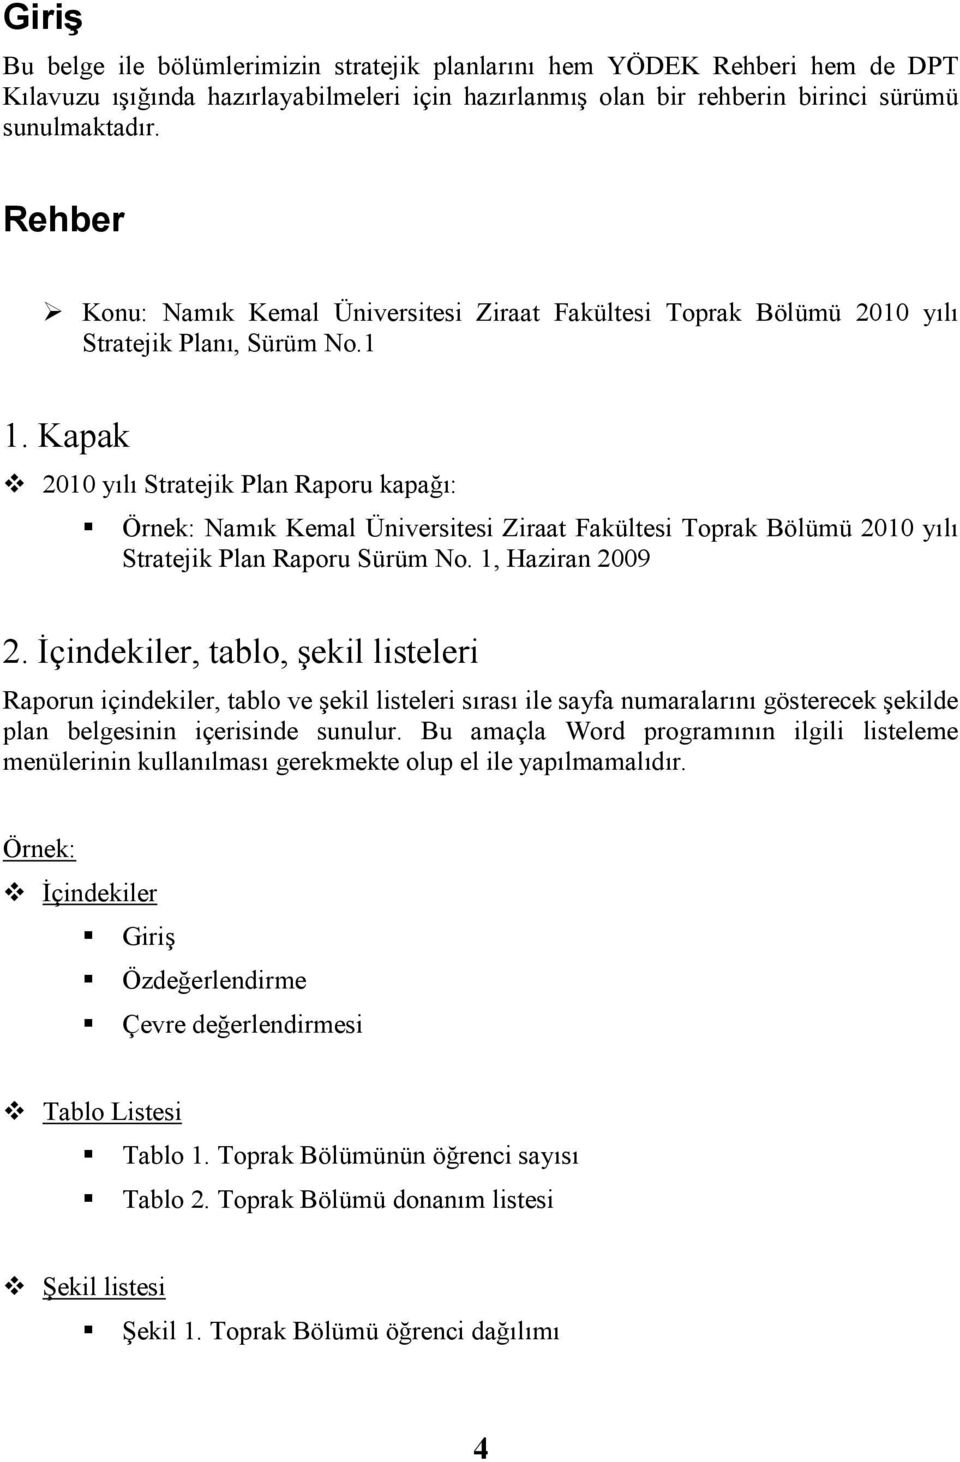 Kapak 2010 yılı Stratejik Plan Raporu kapağı: Örnek: Namık Kemal Üniversitesi Ziraat Fakültesi Toprak Bölümü 2010 yılı Stratejik Plan Raporu Sürüm No. 1, Haziran 2009 2.